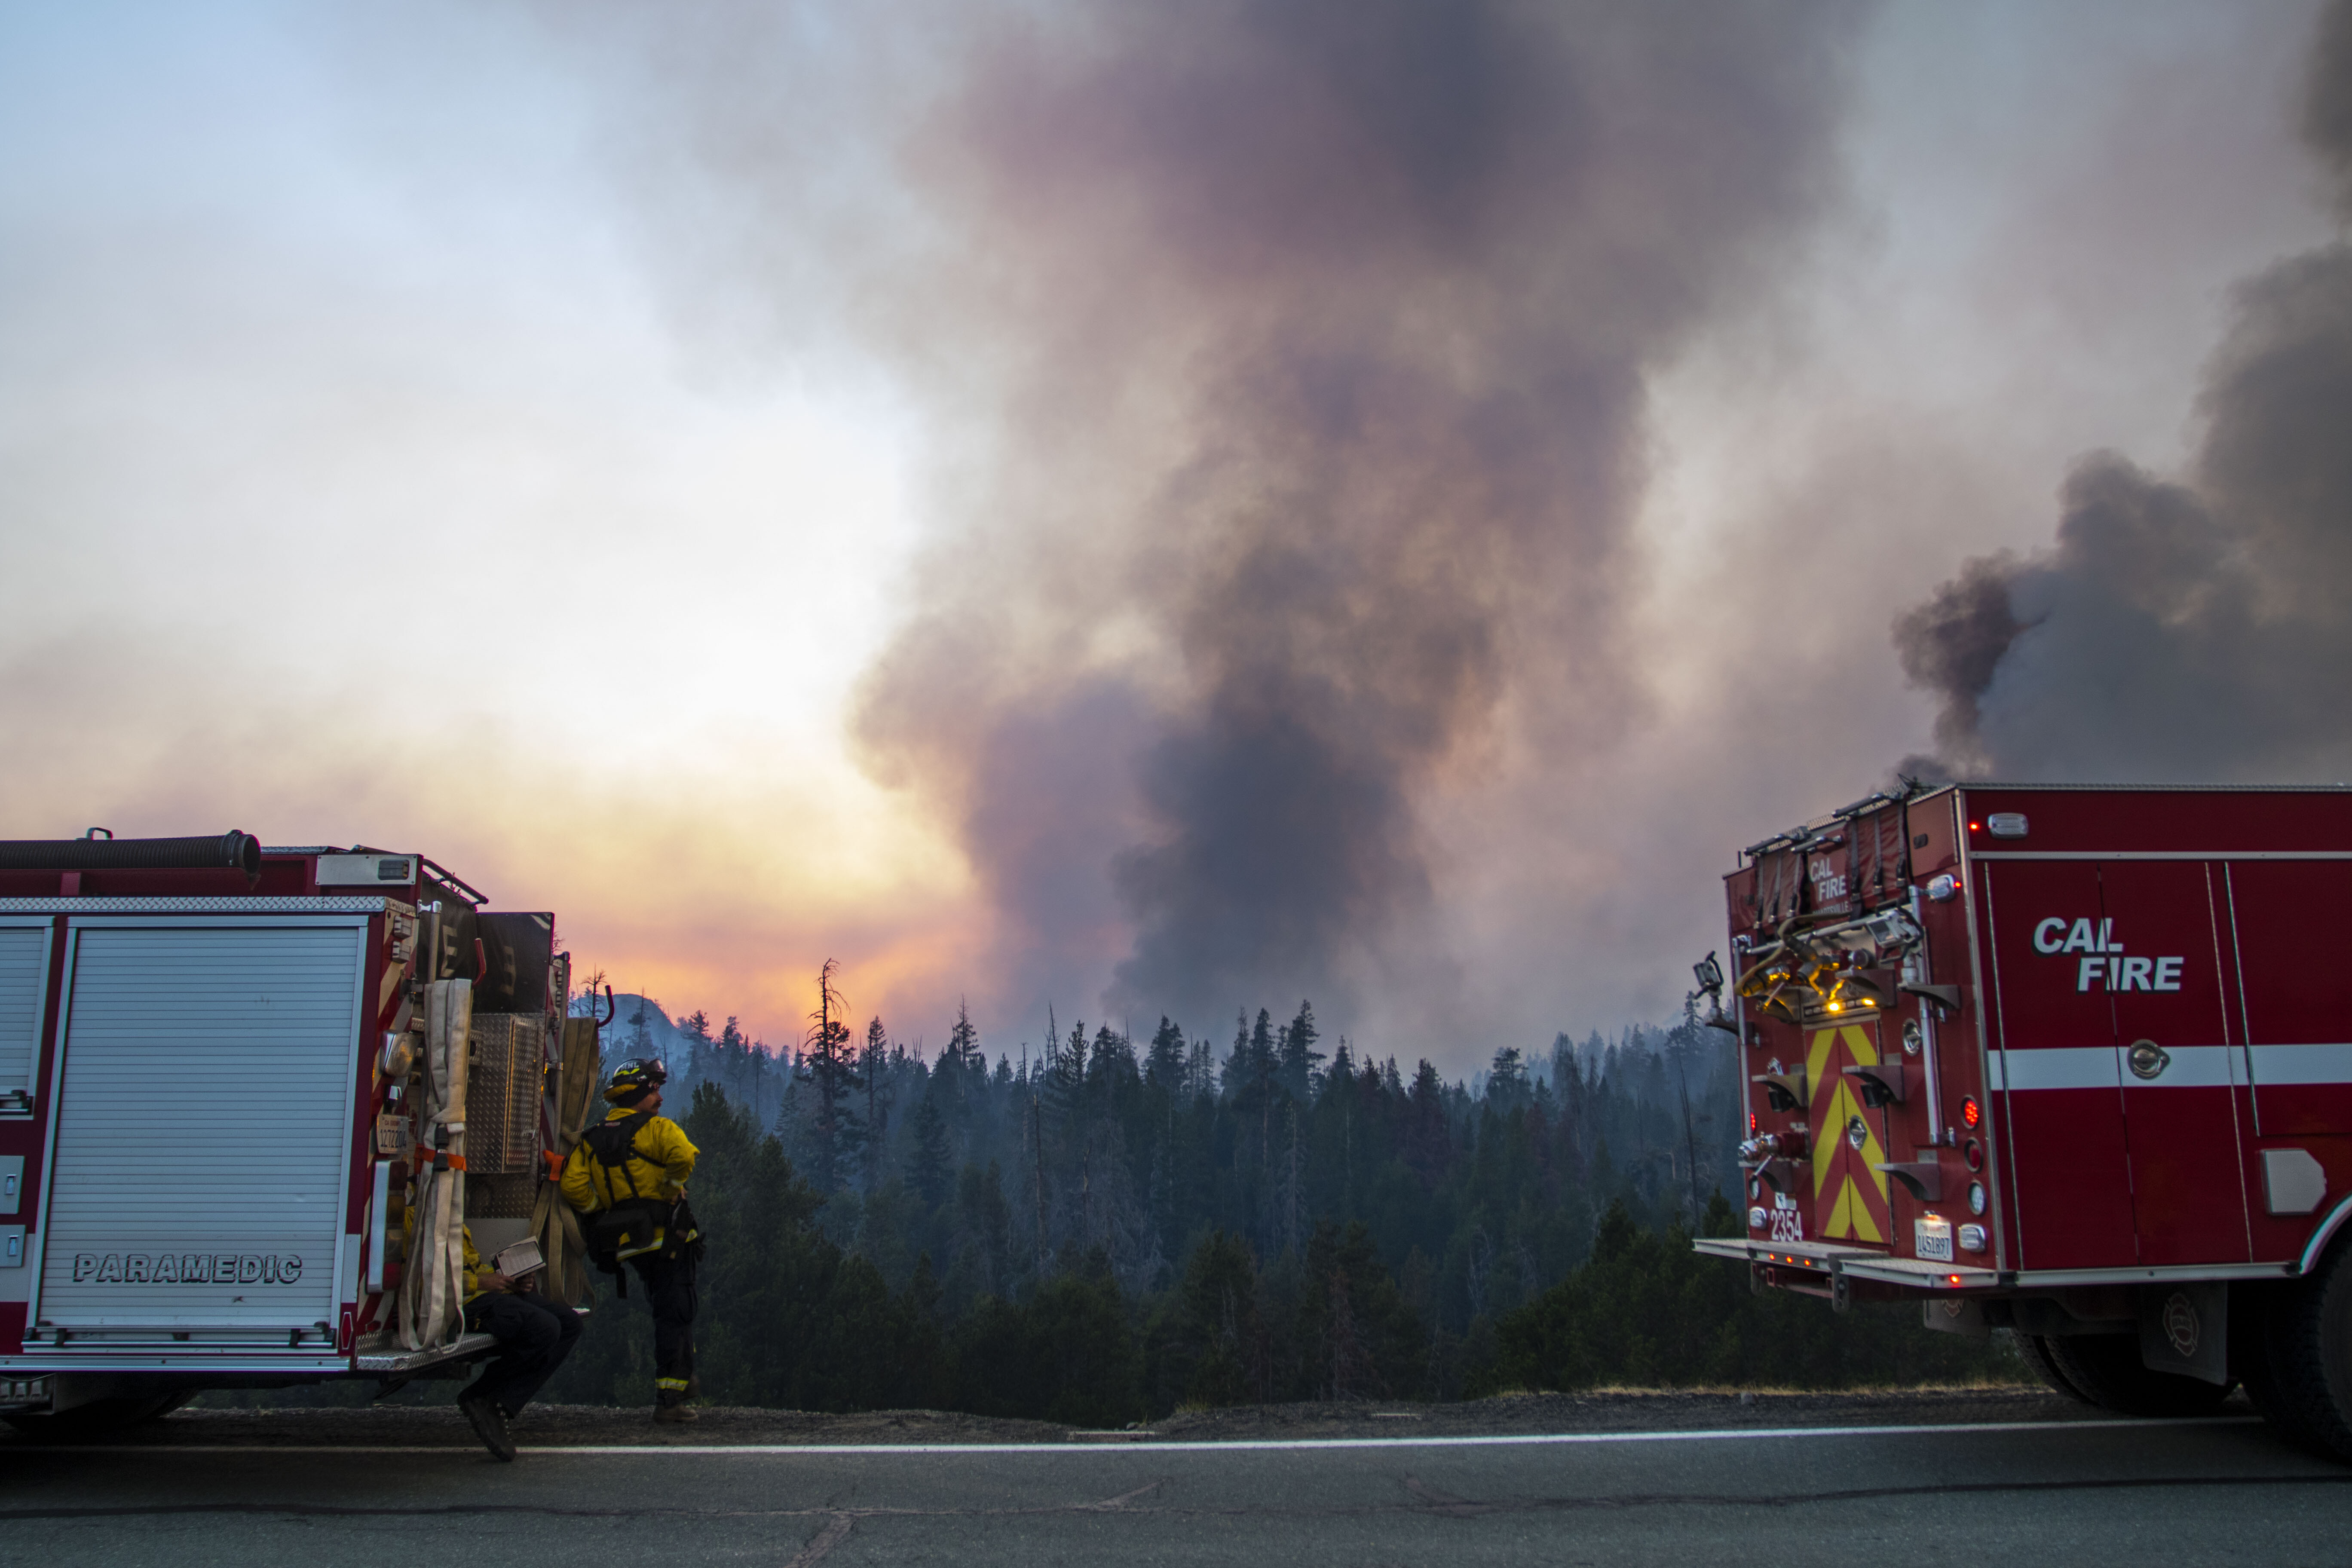 Финалист в категории Американский опыт, 2021. Пожарные и лесной пожар Калдор в Калифорнии, США. Автор Тай О’Нил